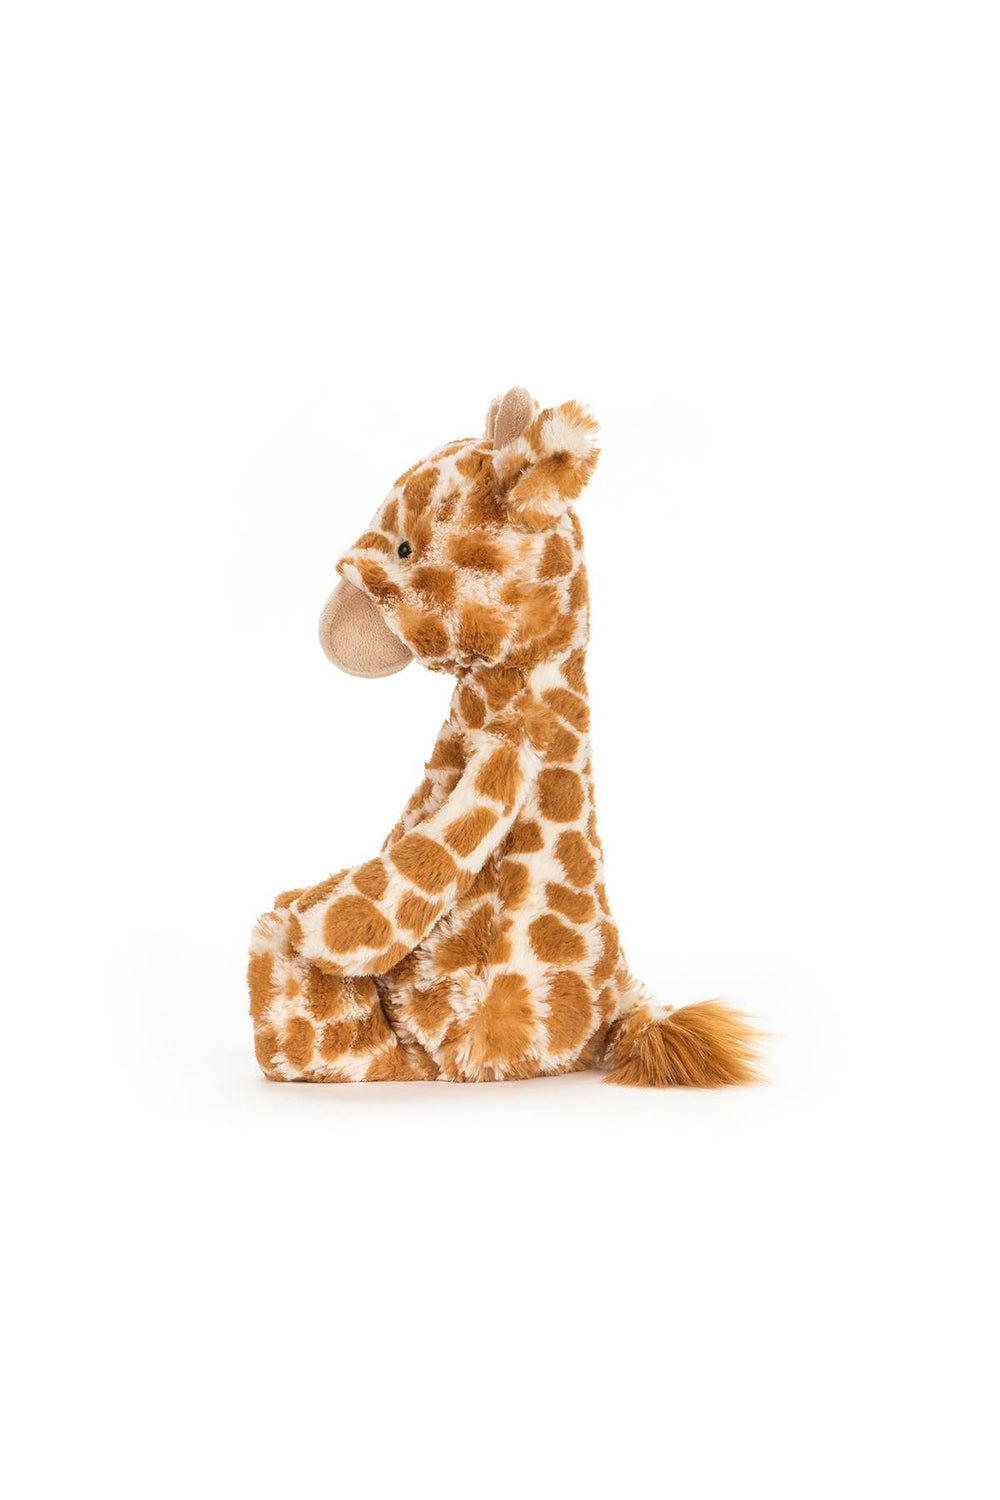 bashful giraffe-1